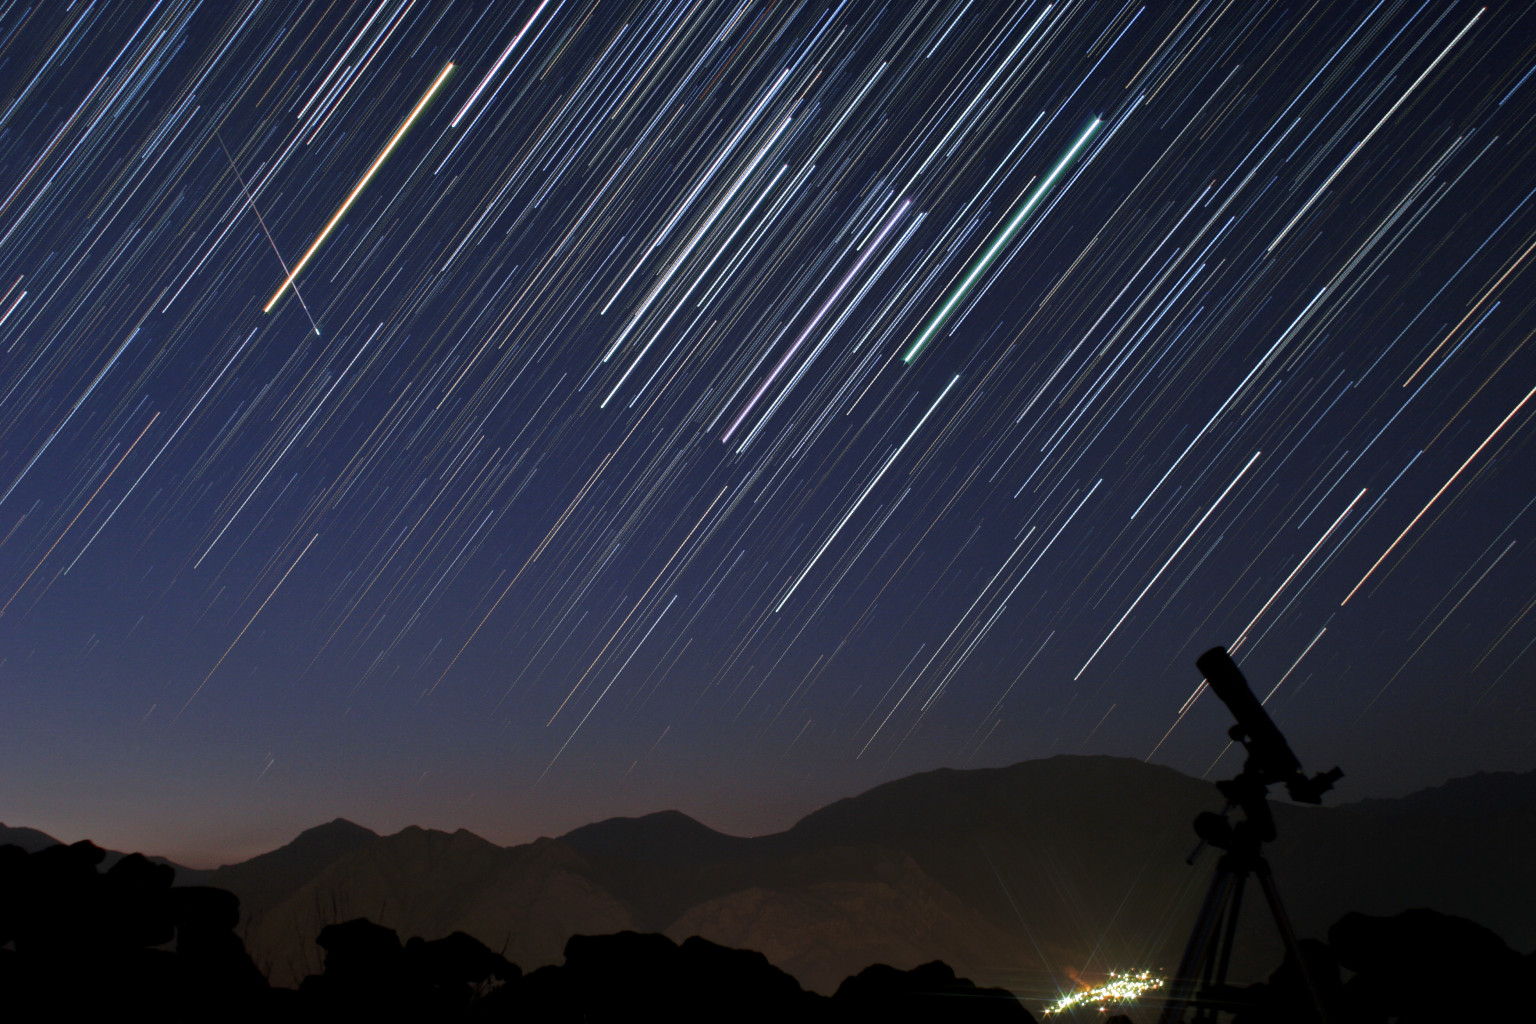 Nasa Views Perseid Meteor Shower Days Before Predicted Peak (VIDEO